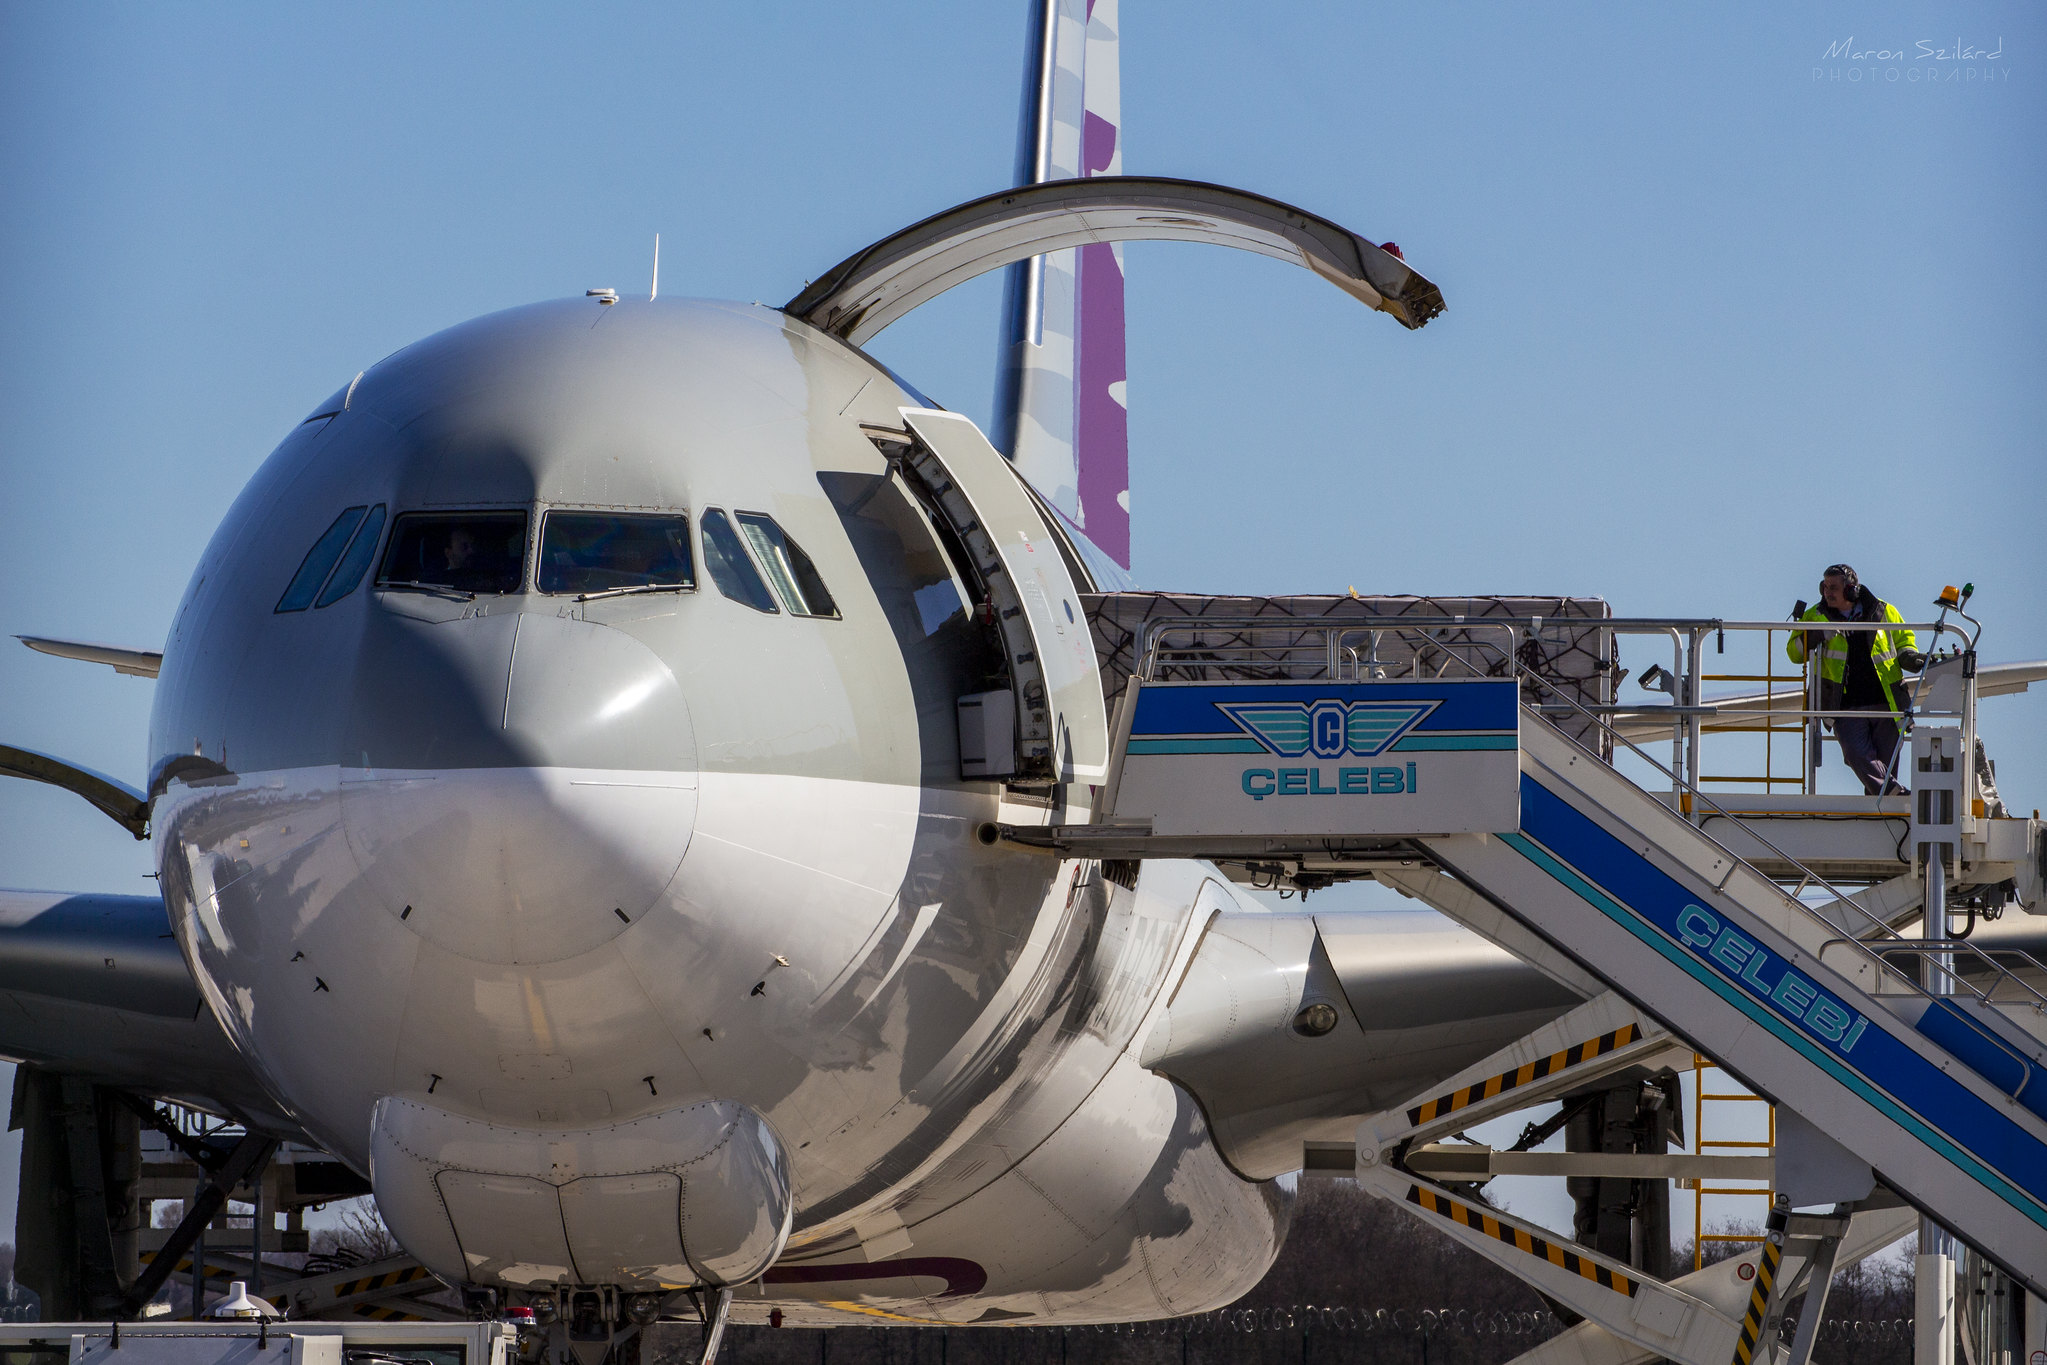 Éppen pakolják le az árut a Qatar Aiways Cargo egyik Airbus A330F típusú repülőgépéről még márciusban a Cargo Citynél (fotó: Maron Szilárd Ákos)